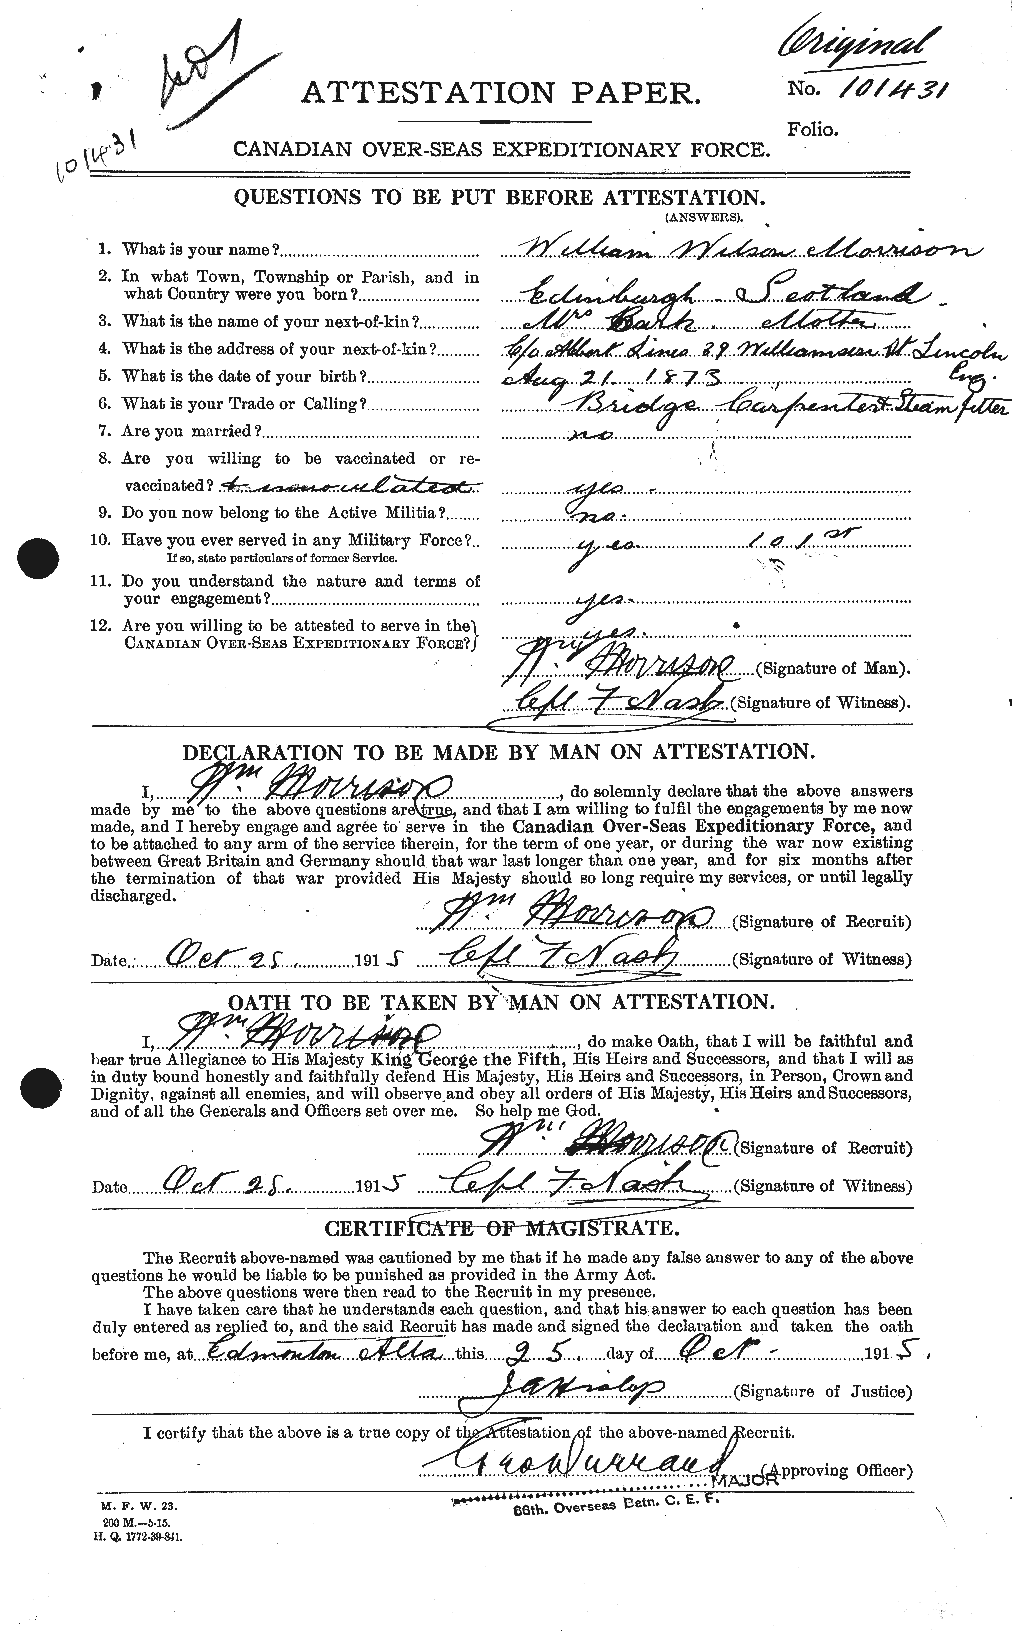 Dossiers du Personnel de la Première Guerre mondiale - CEC 509331a